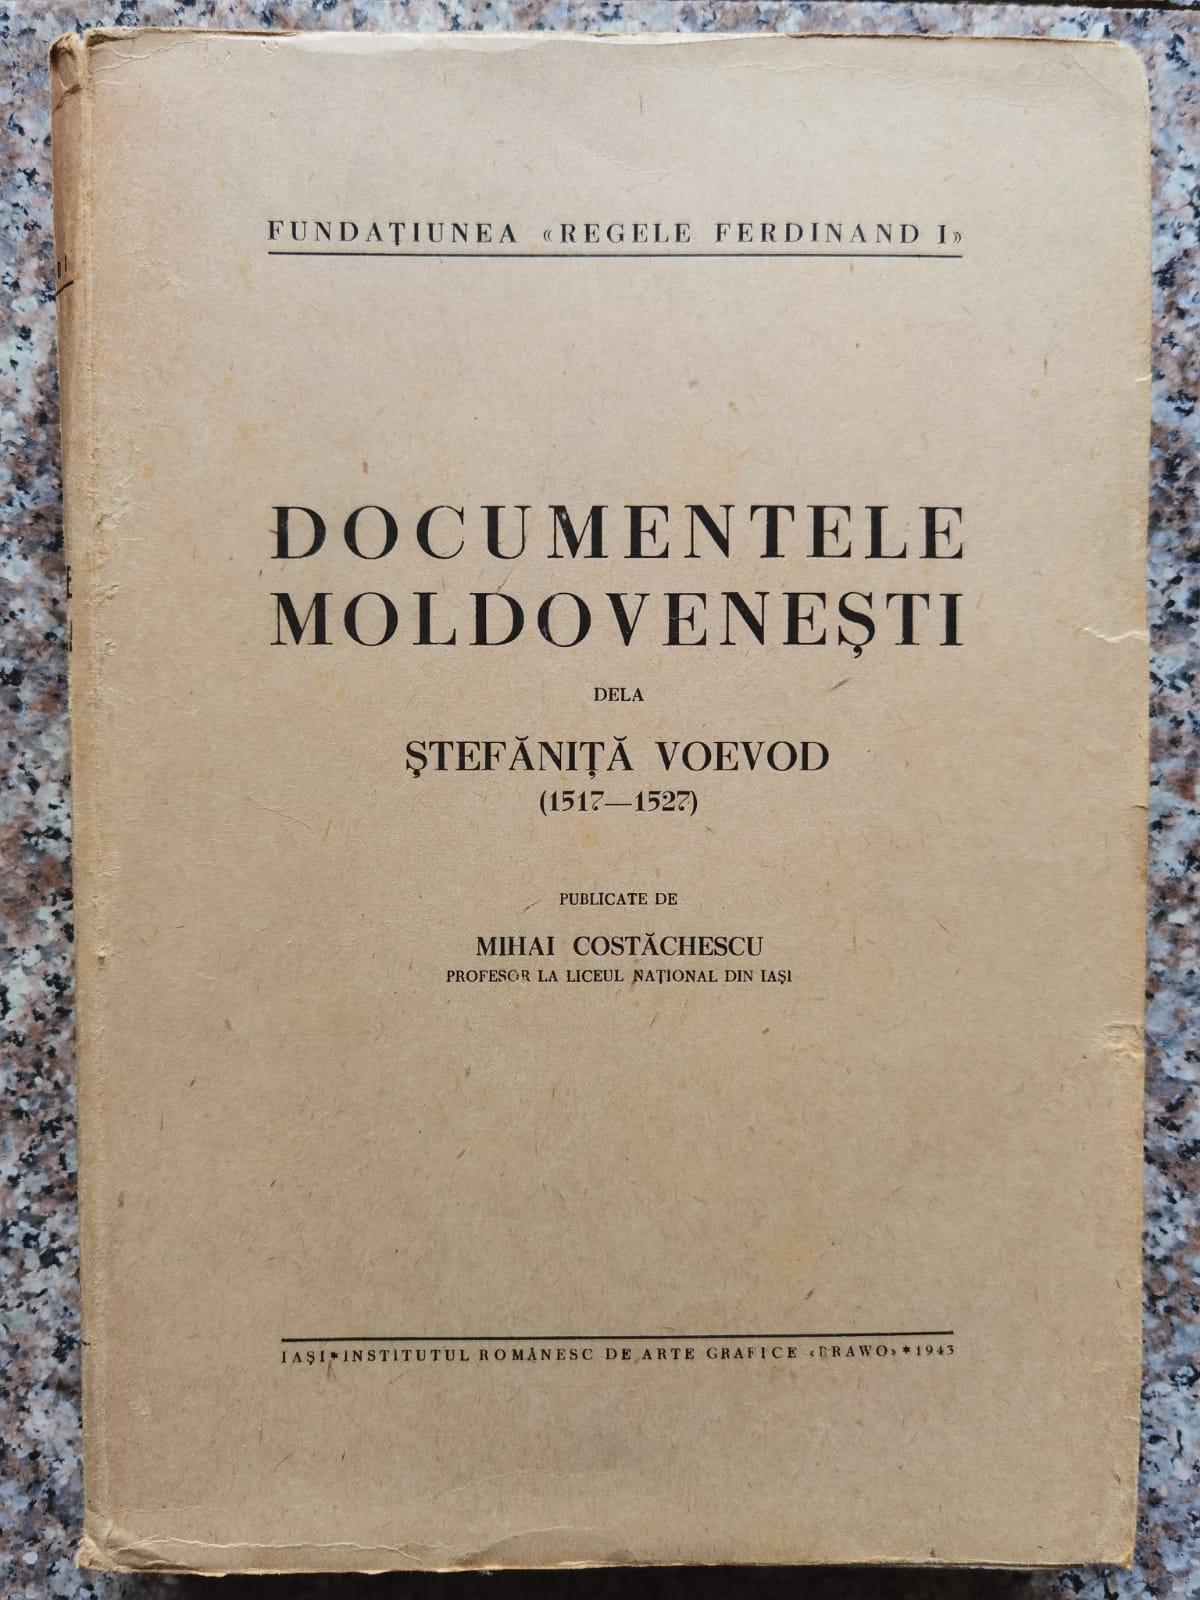 documentele moldovenesti de la stefanita voievod (1517-1527) - fara primele 65 de pagini             mihai costachescu                                                                                   